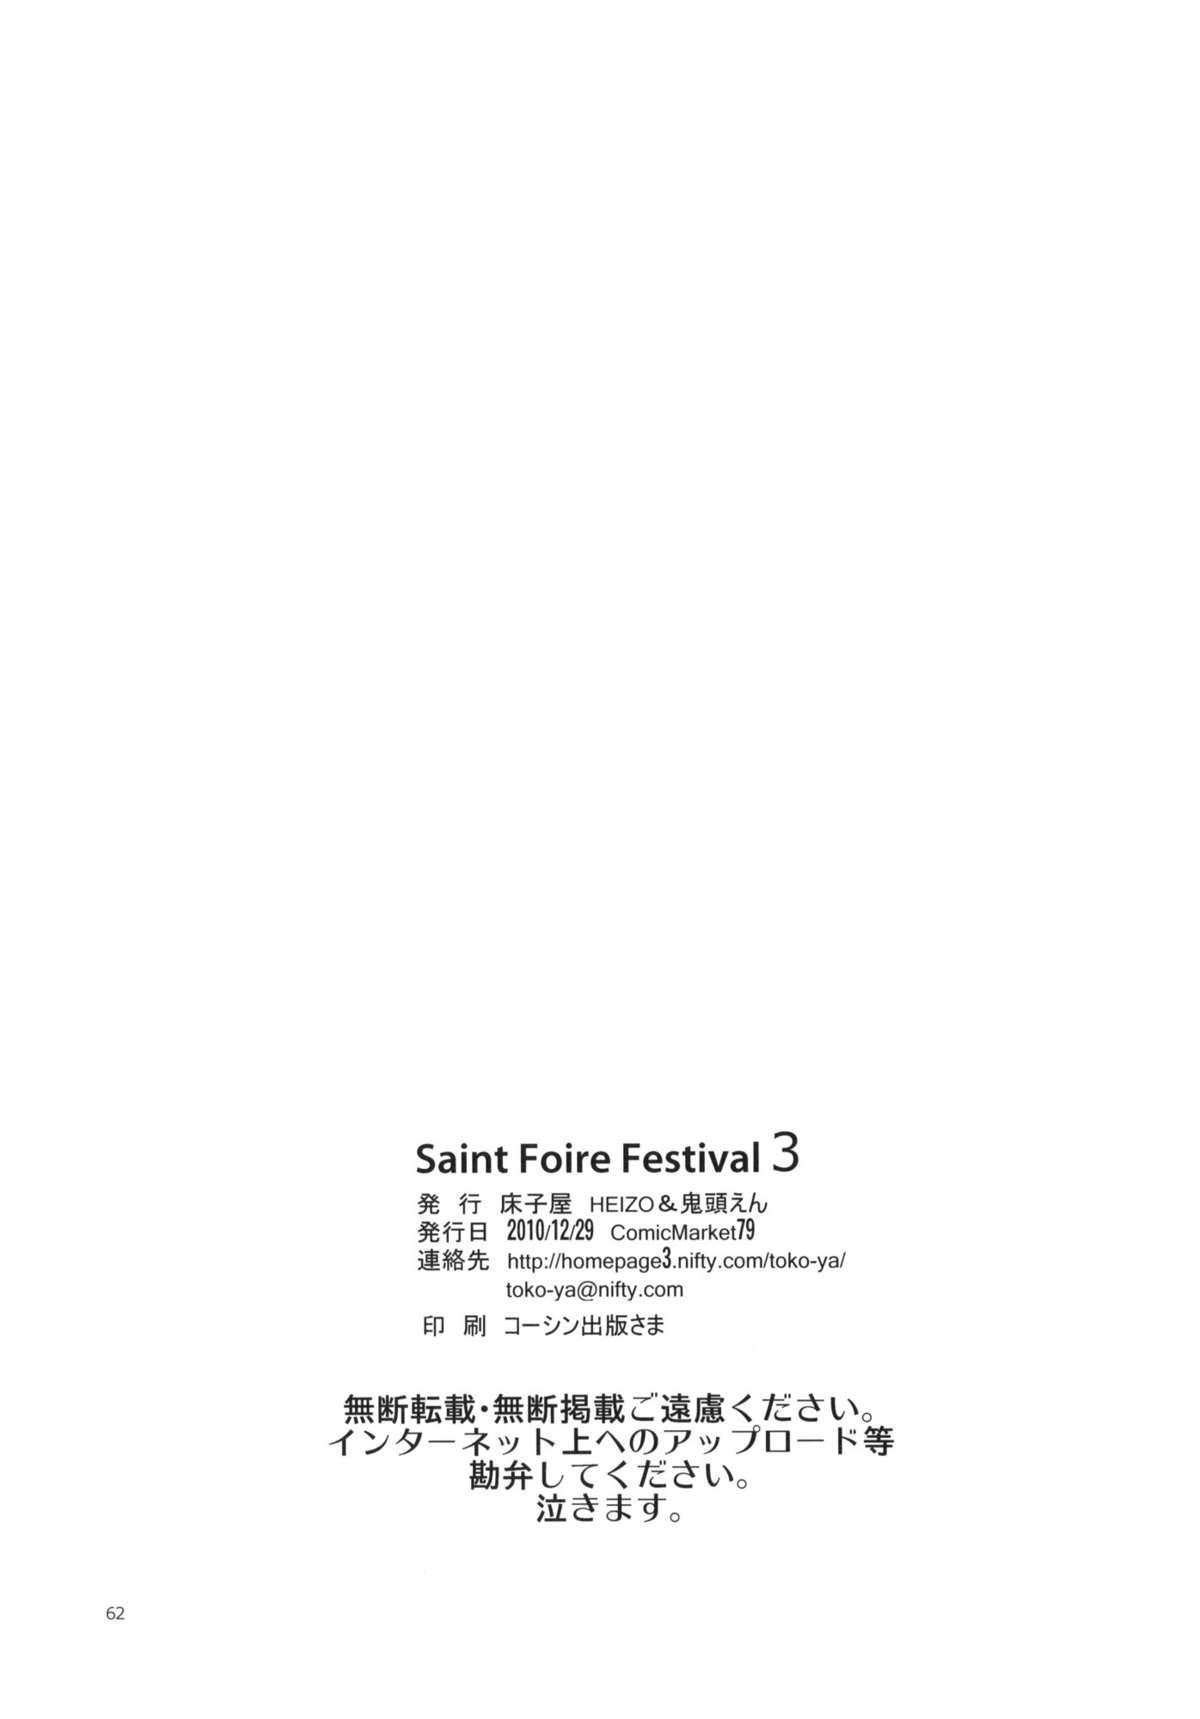 Saint Foire Festival 3 Richildis 60